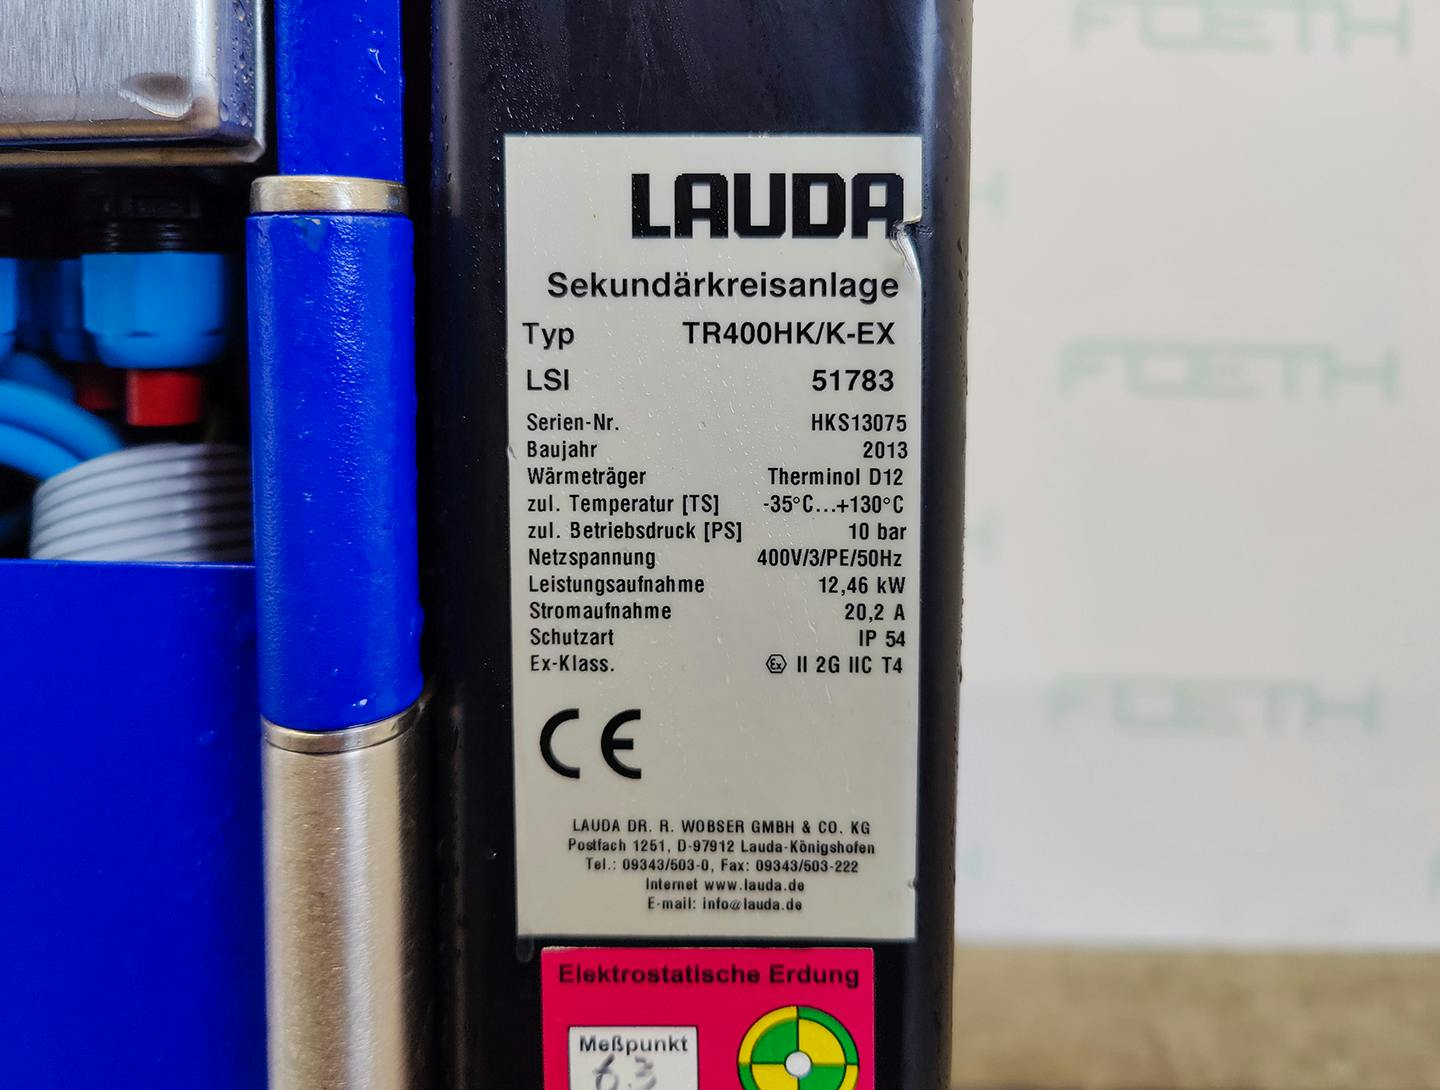 Lauda TR400 HK/K-EX "secondary circuit system" - Atemperador - image 6